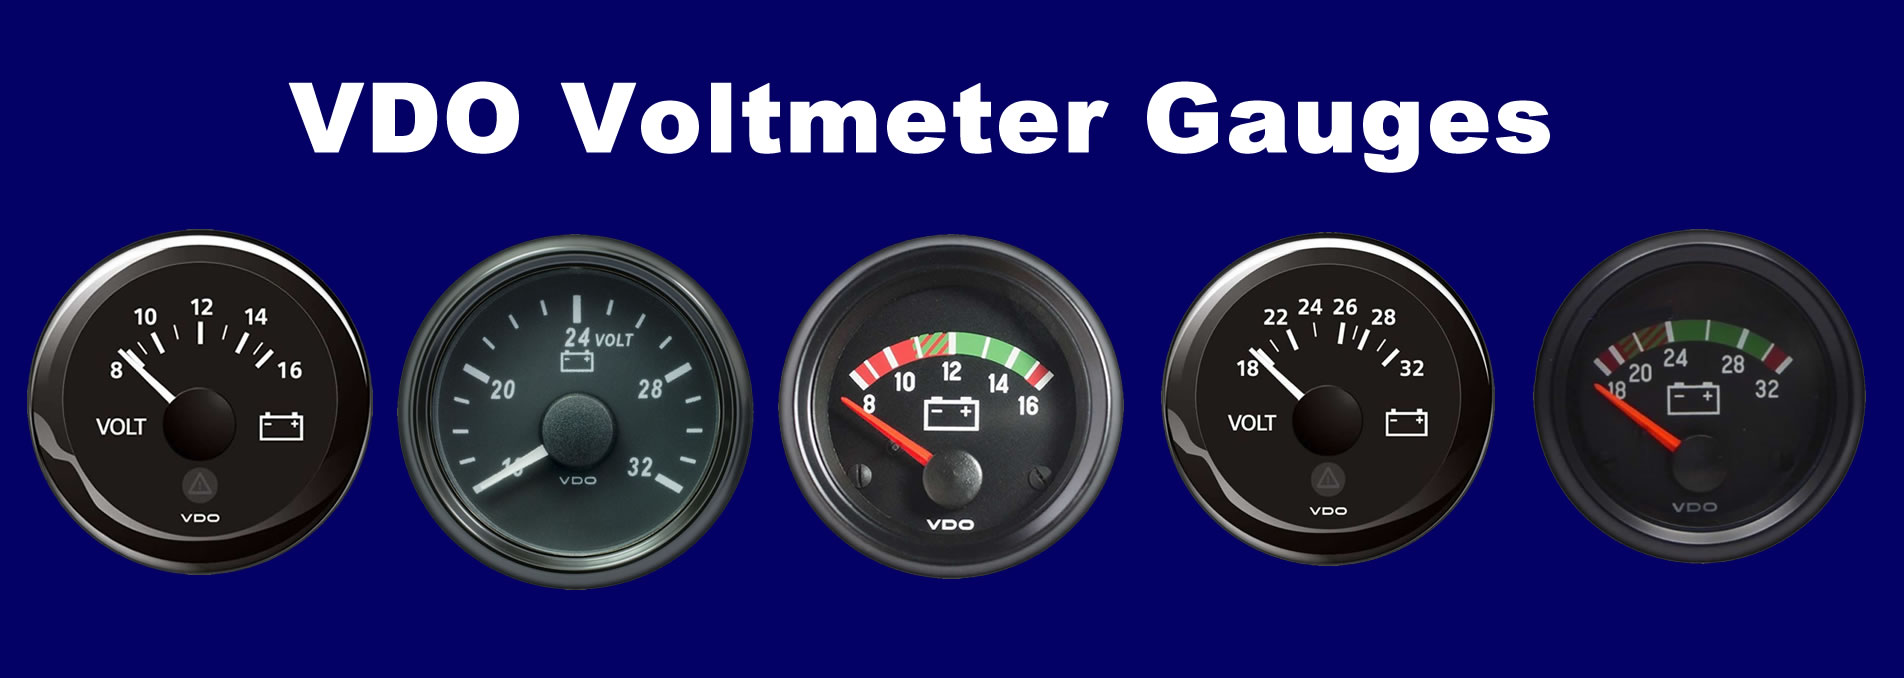 vdo voltmeter gauges banner